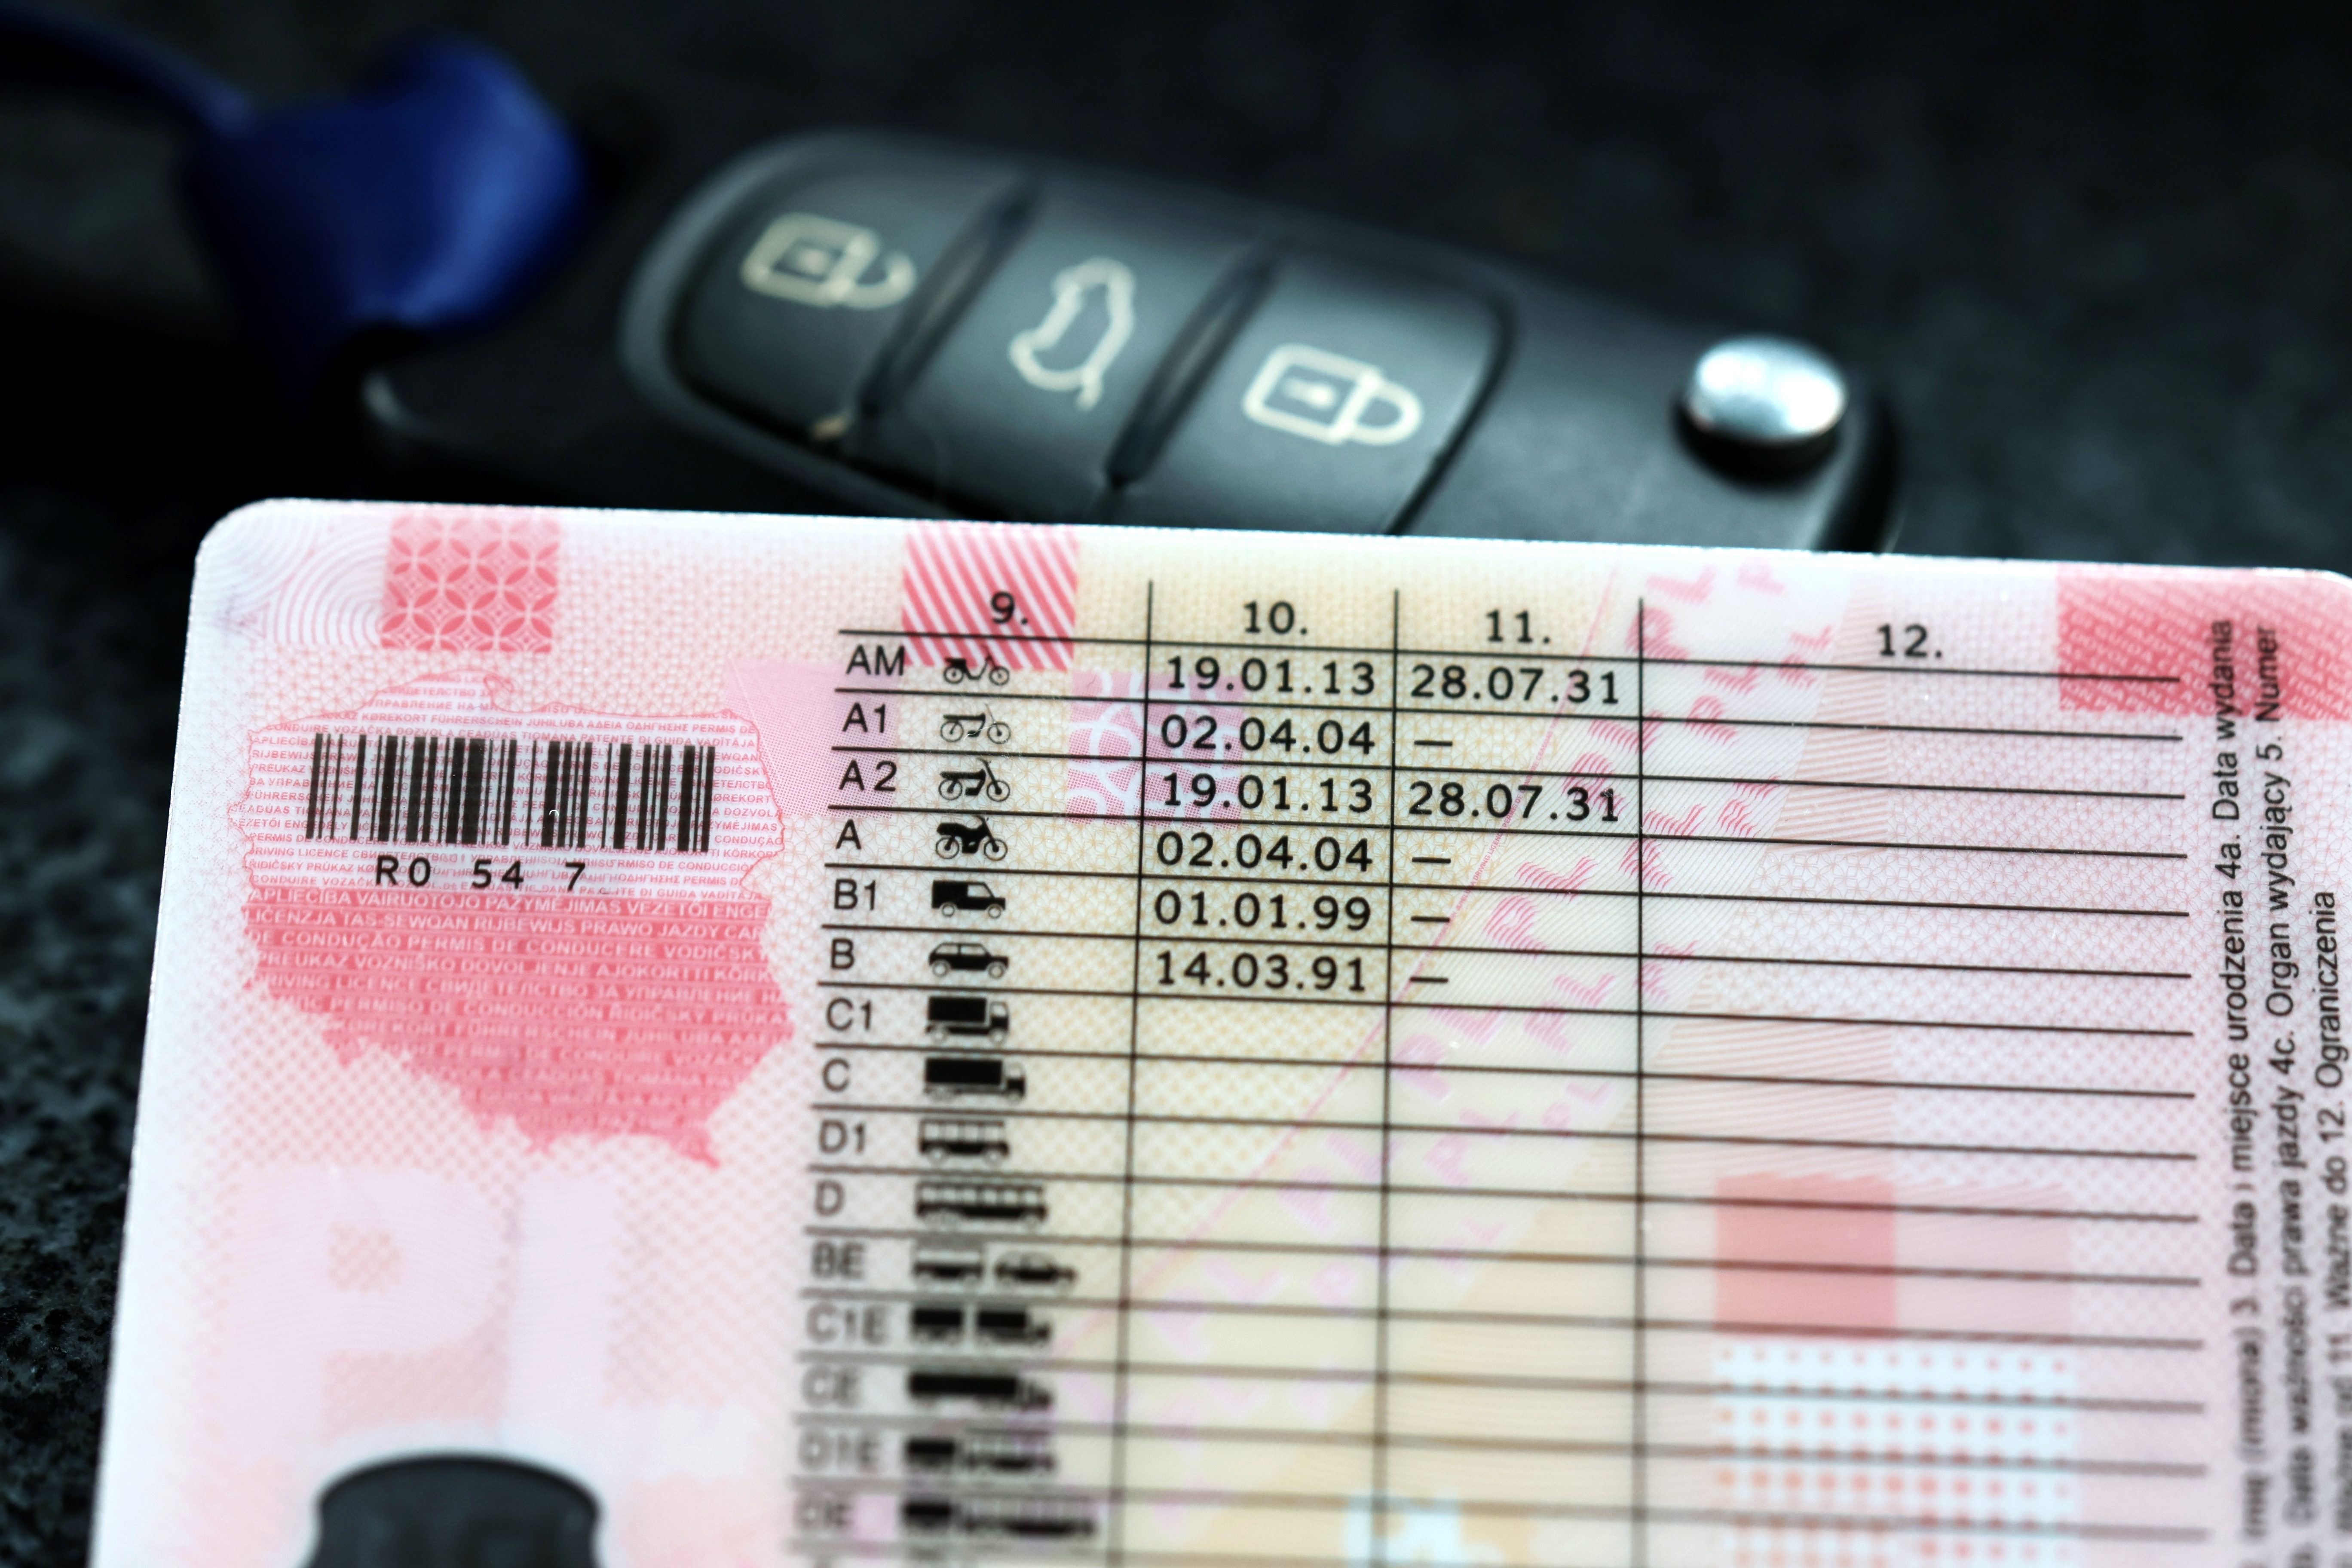     Examen du permis de conduire : la nouvelle plateforme ne fait pas l’unanimité

